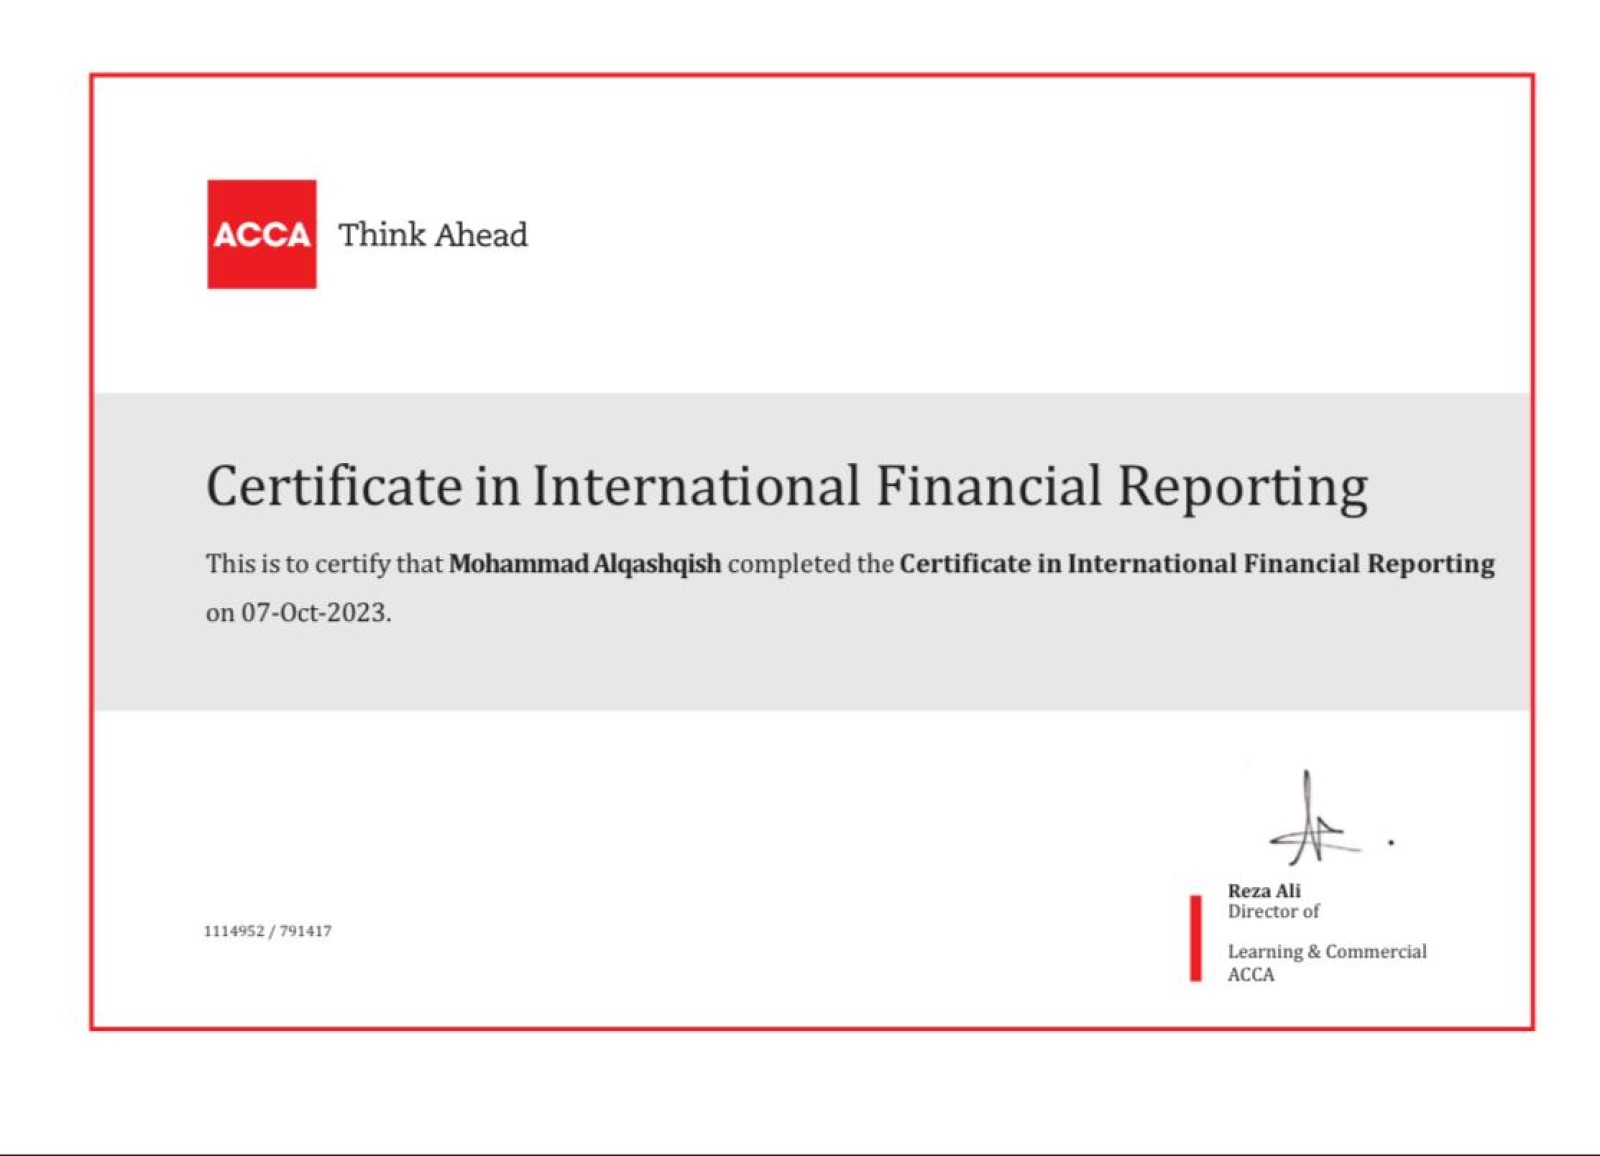 حصل موظفنا محمد القشقيش على شهادة تقرير المالى الدولي